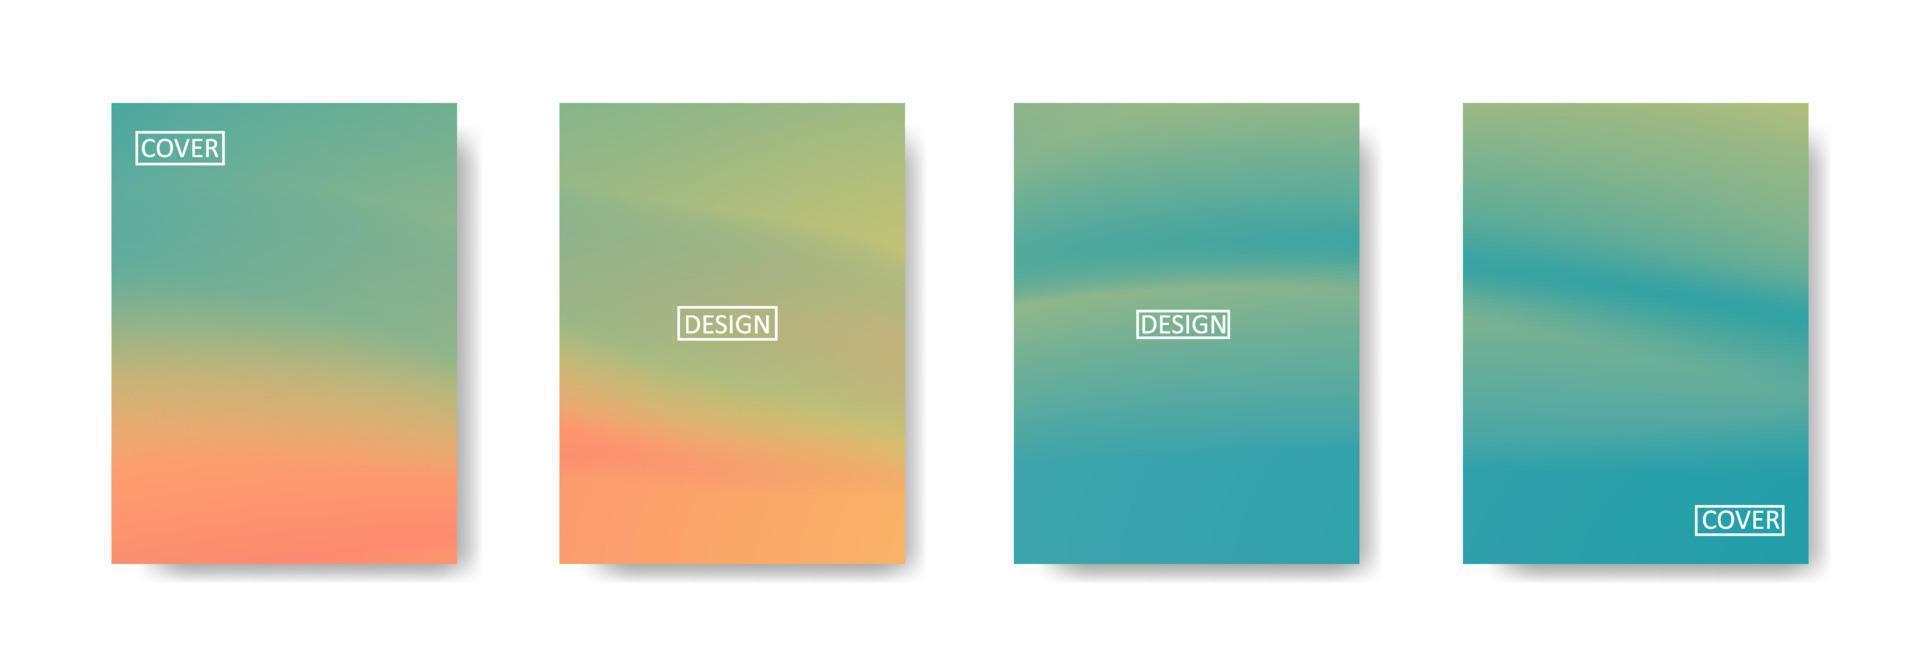 coleção gradiente de belos modelos coloridos abstratos vetor